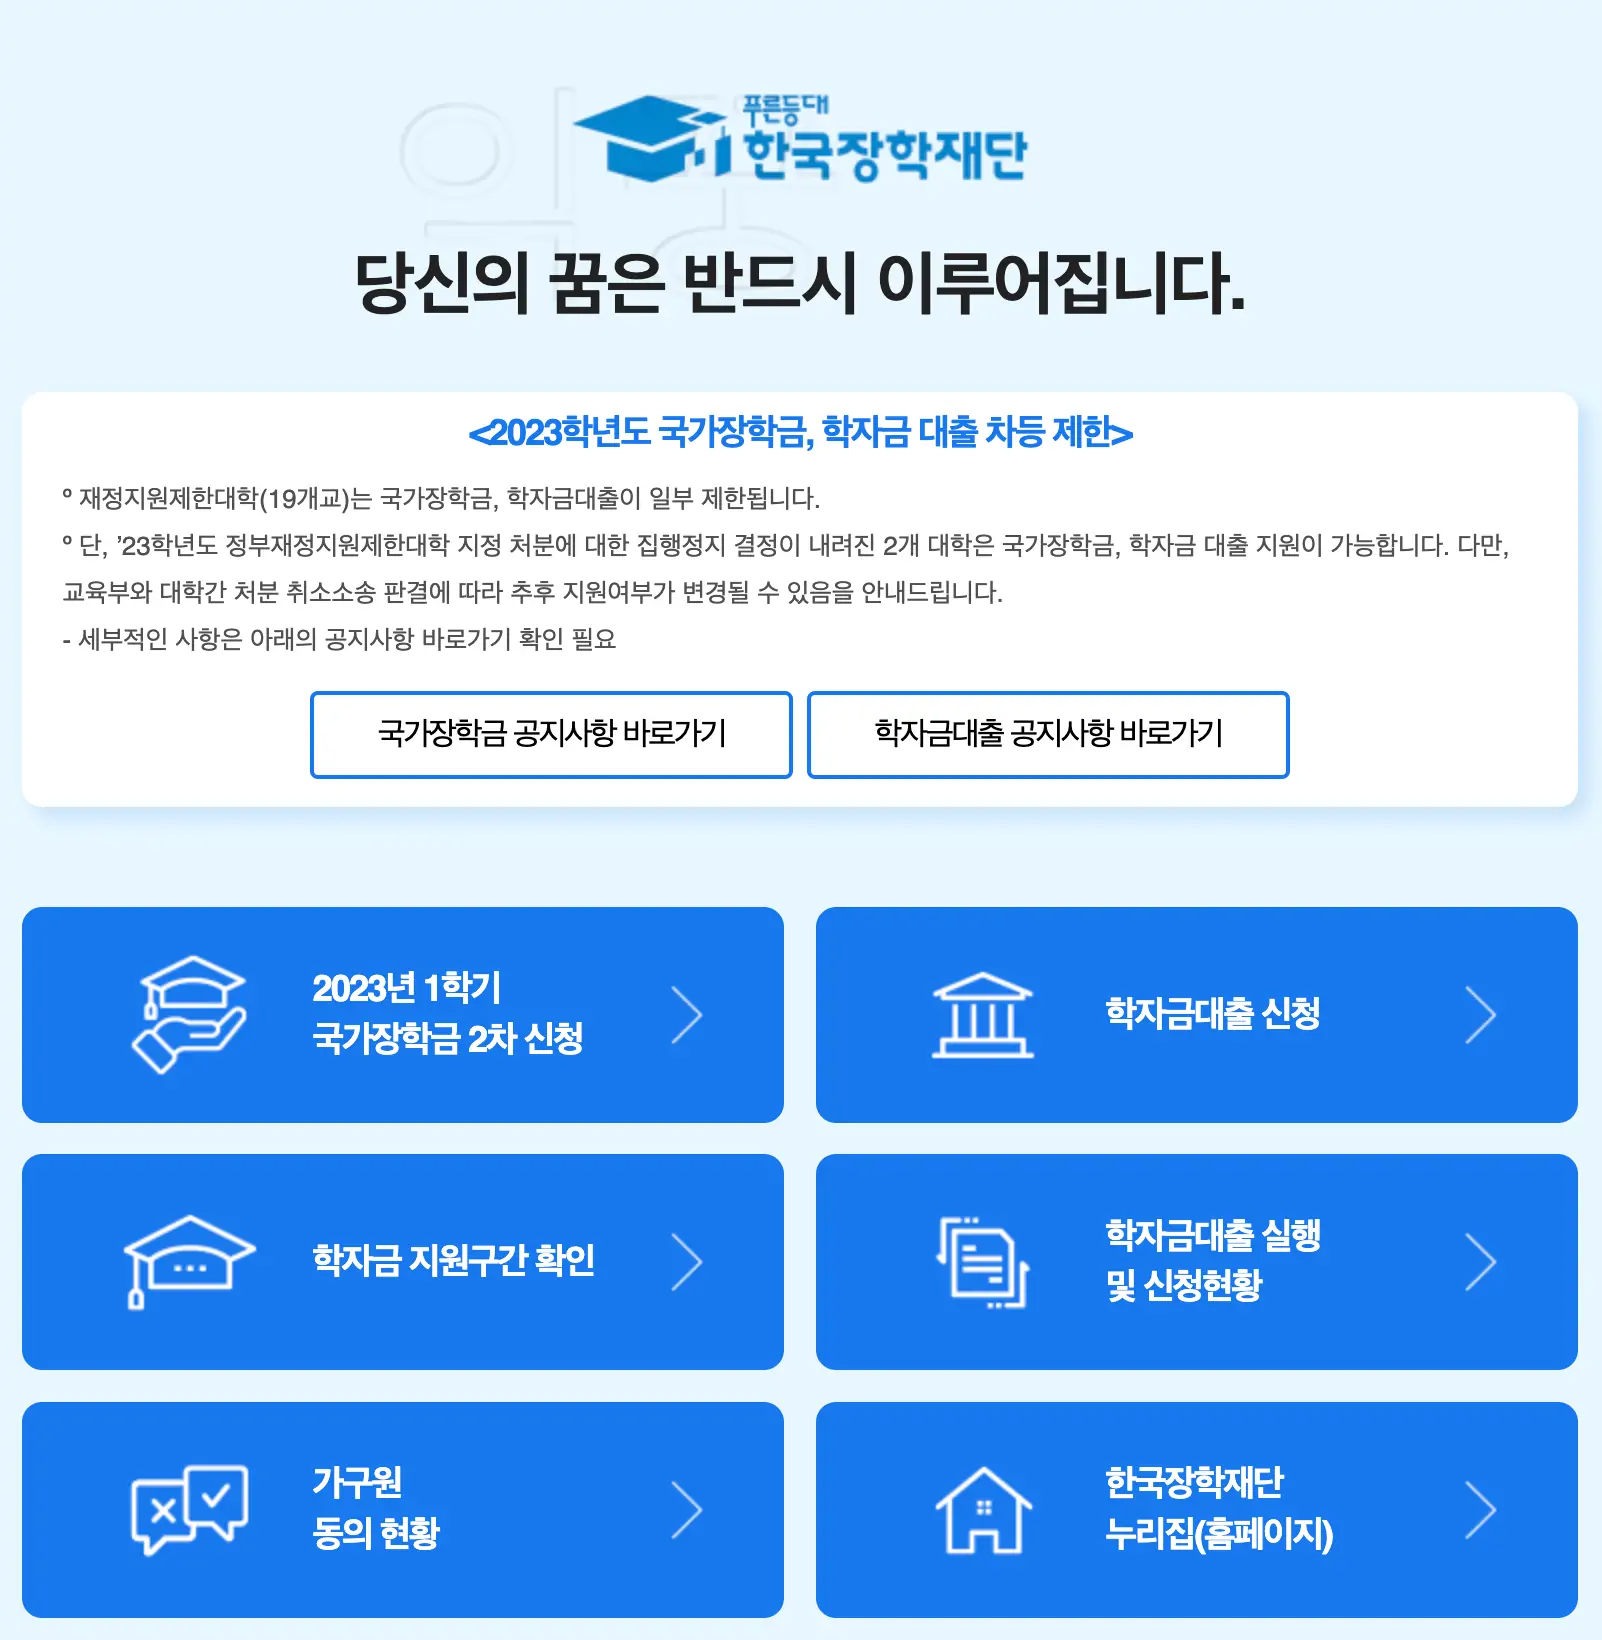 한국장학재단 사이트 화면